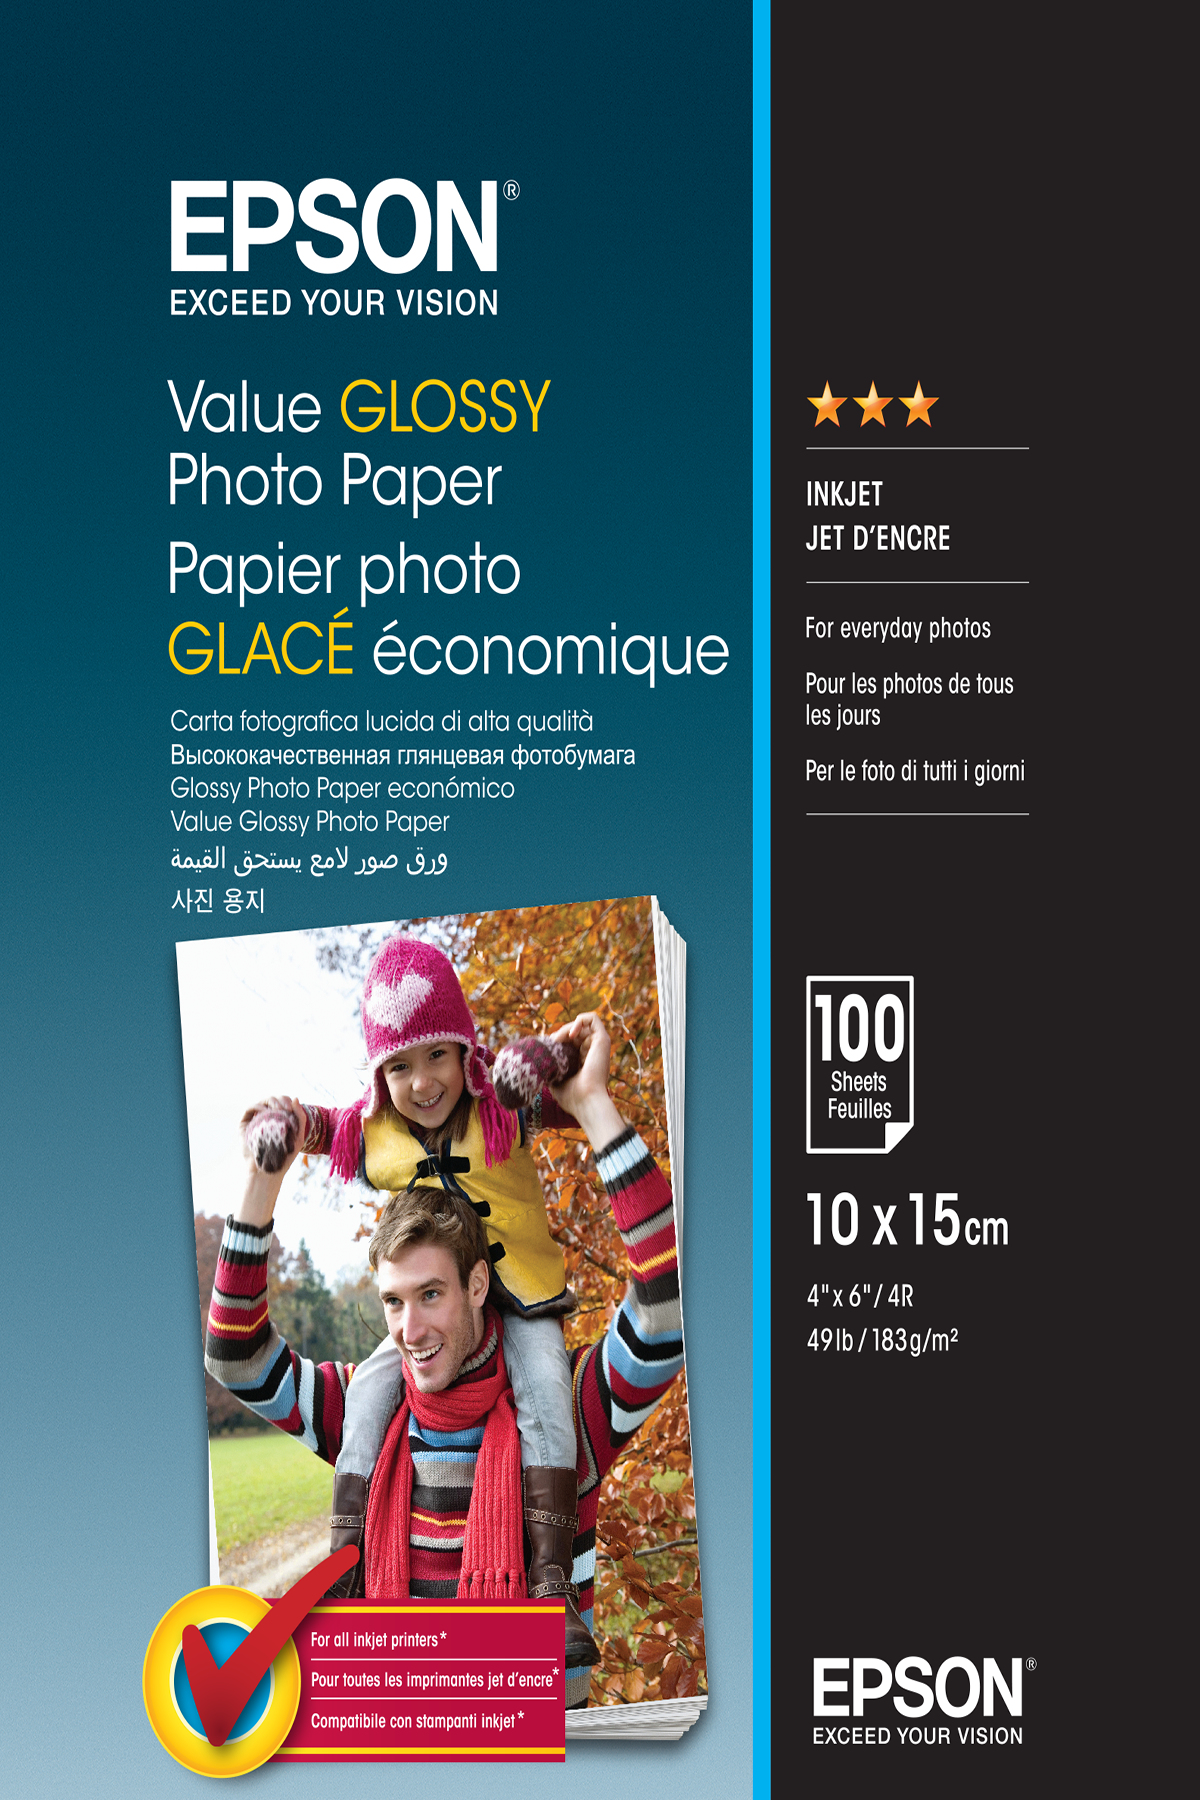 Epson Value Glossy Photo Paper - 10x15cm - 100 Fogli C13S400039, Carta  fotografica